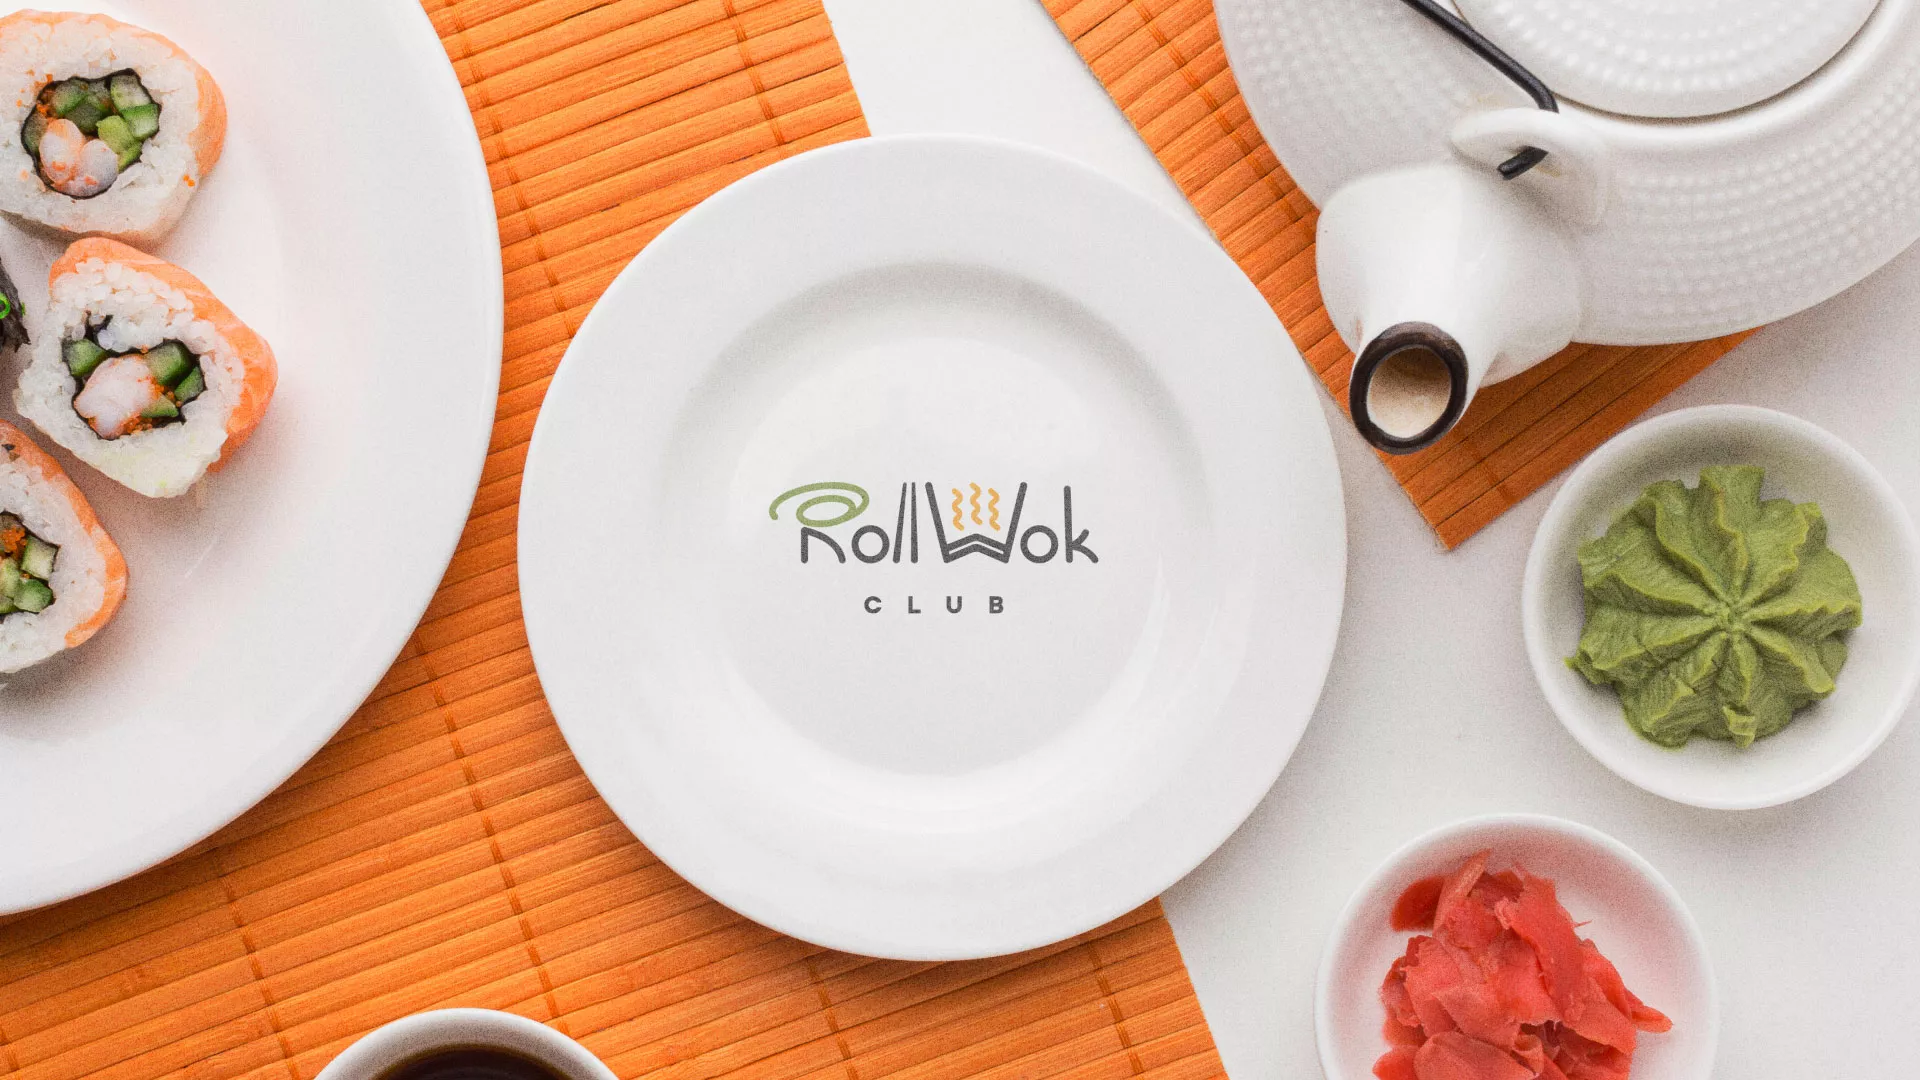 Разработка логотипа и фирменного стиля суши-бара «Roll Wok Club» в Таганроге